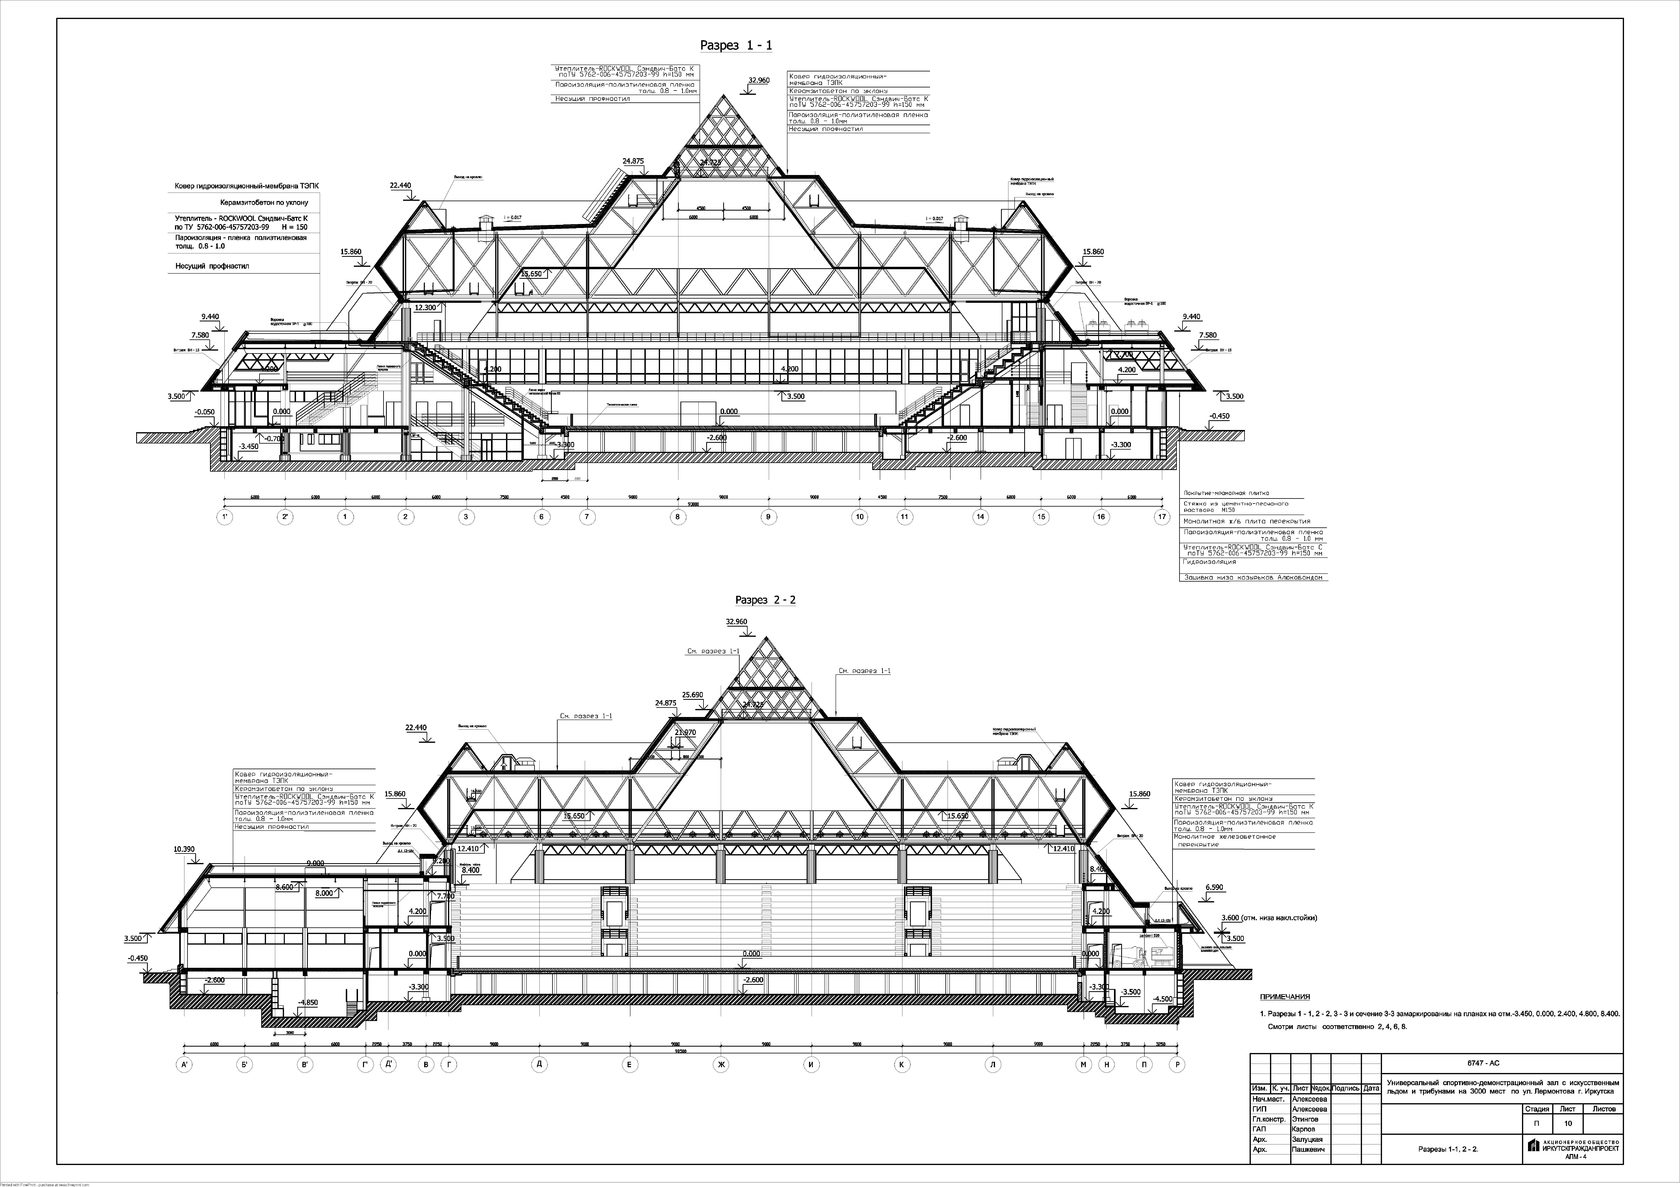 ледовый дворец айсберг иркутск схема зала с местами